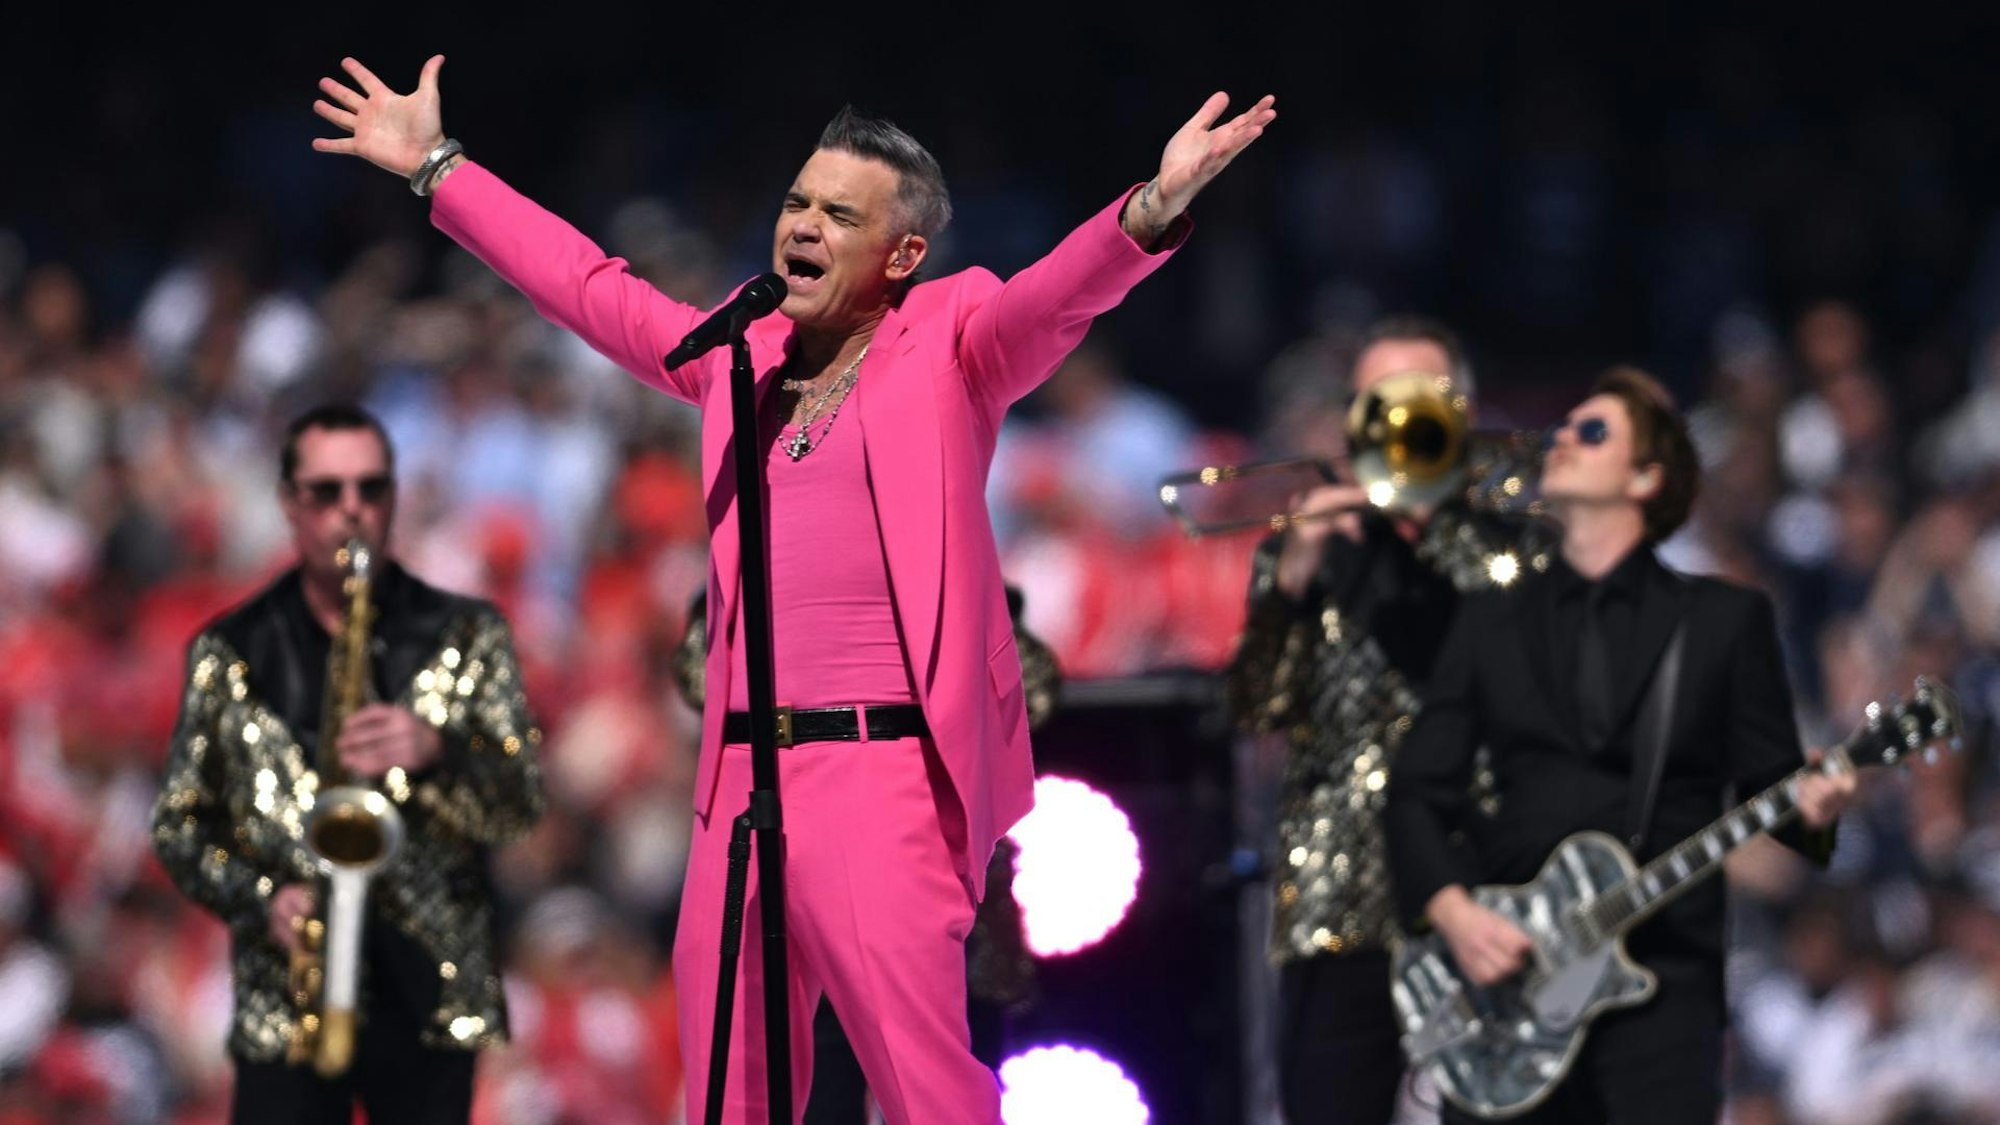 Sänger Robbie Williams bei einem Konzert im australischen Melbourne.